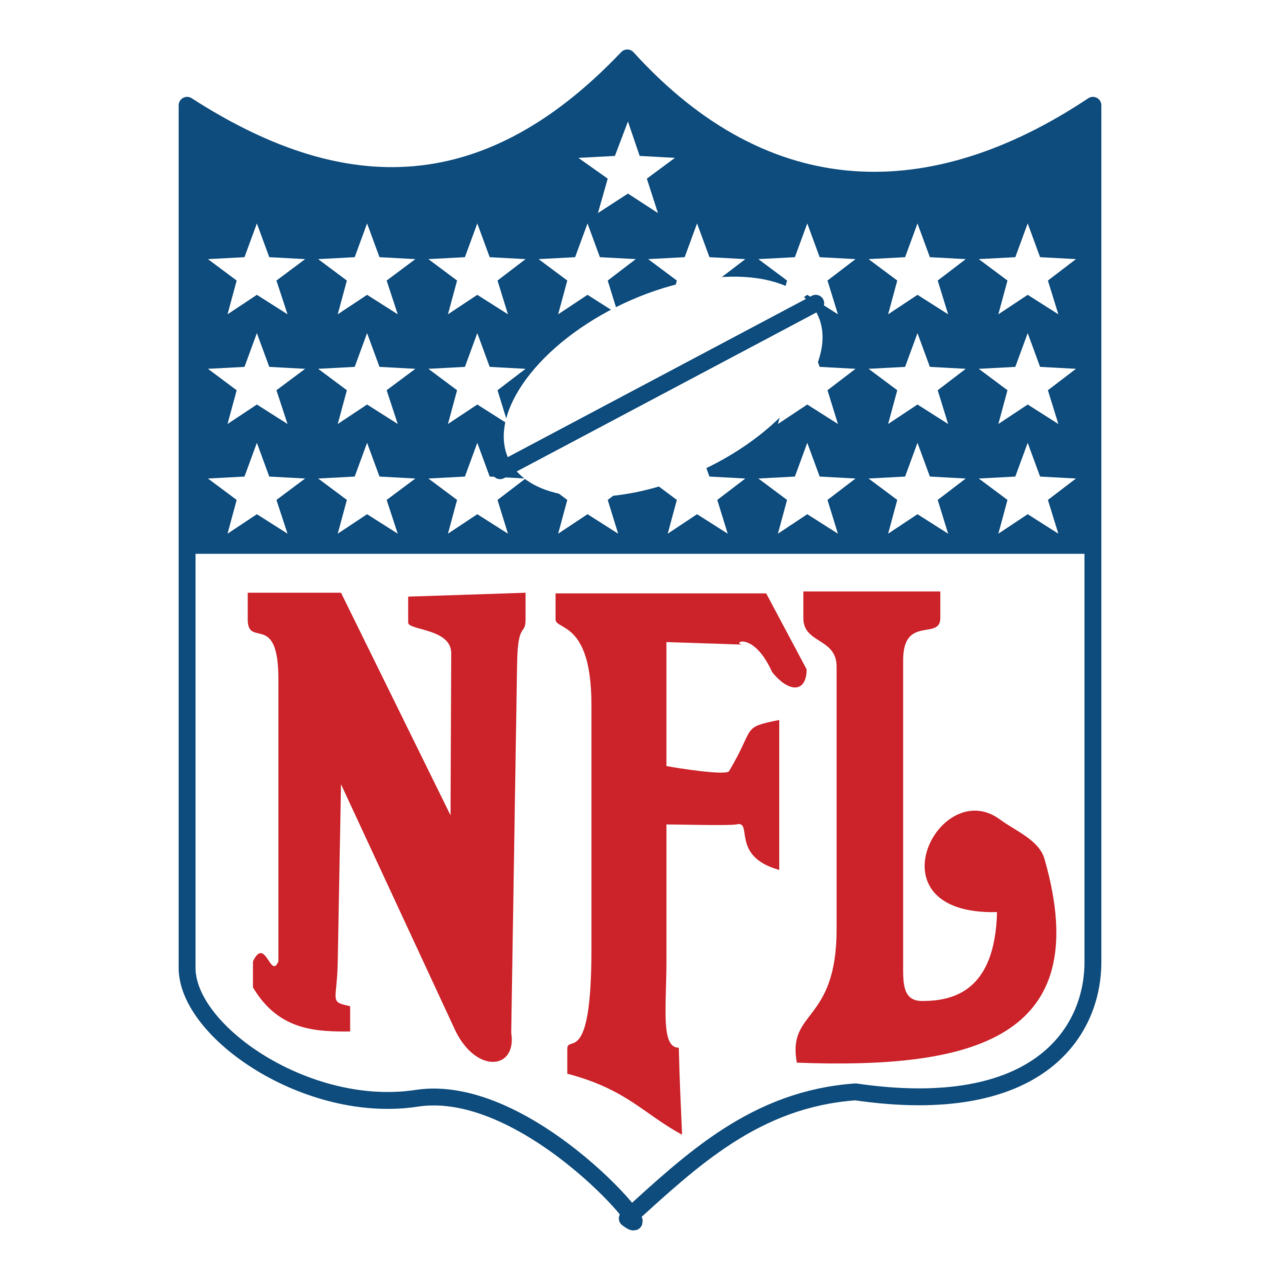 NFL Logo PNG Image File - PNG All